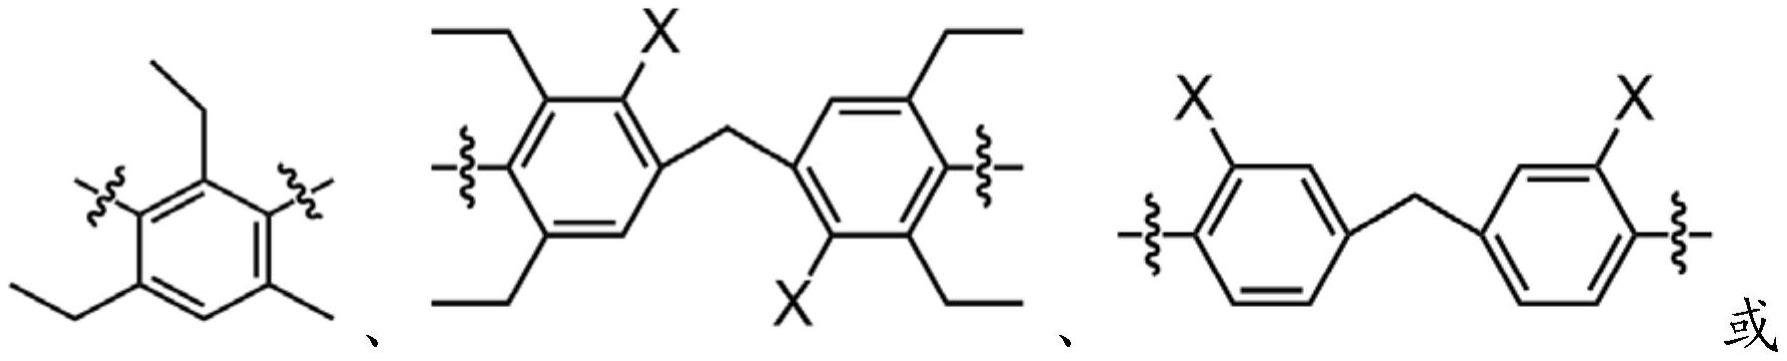 改性异氰酸酯单体及其制备方法